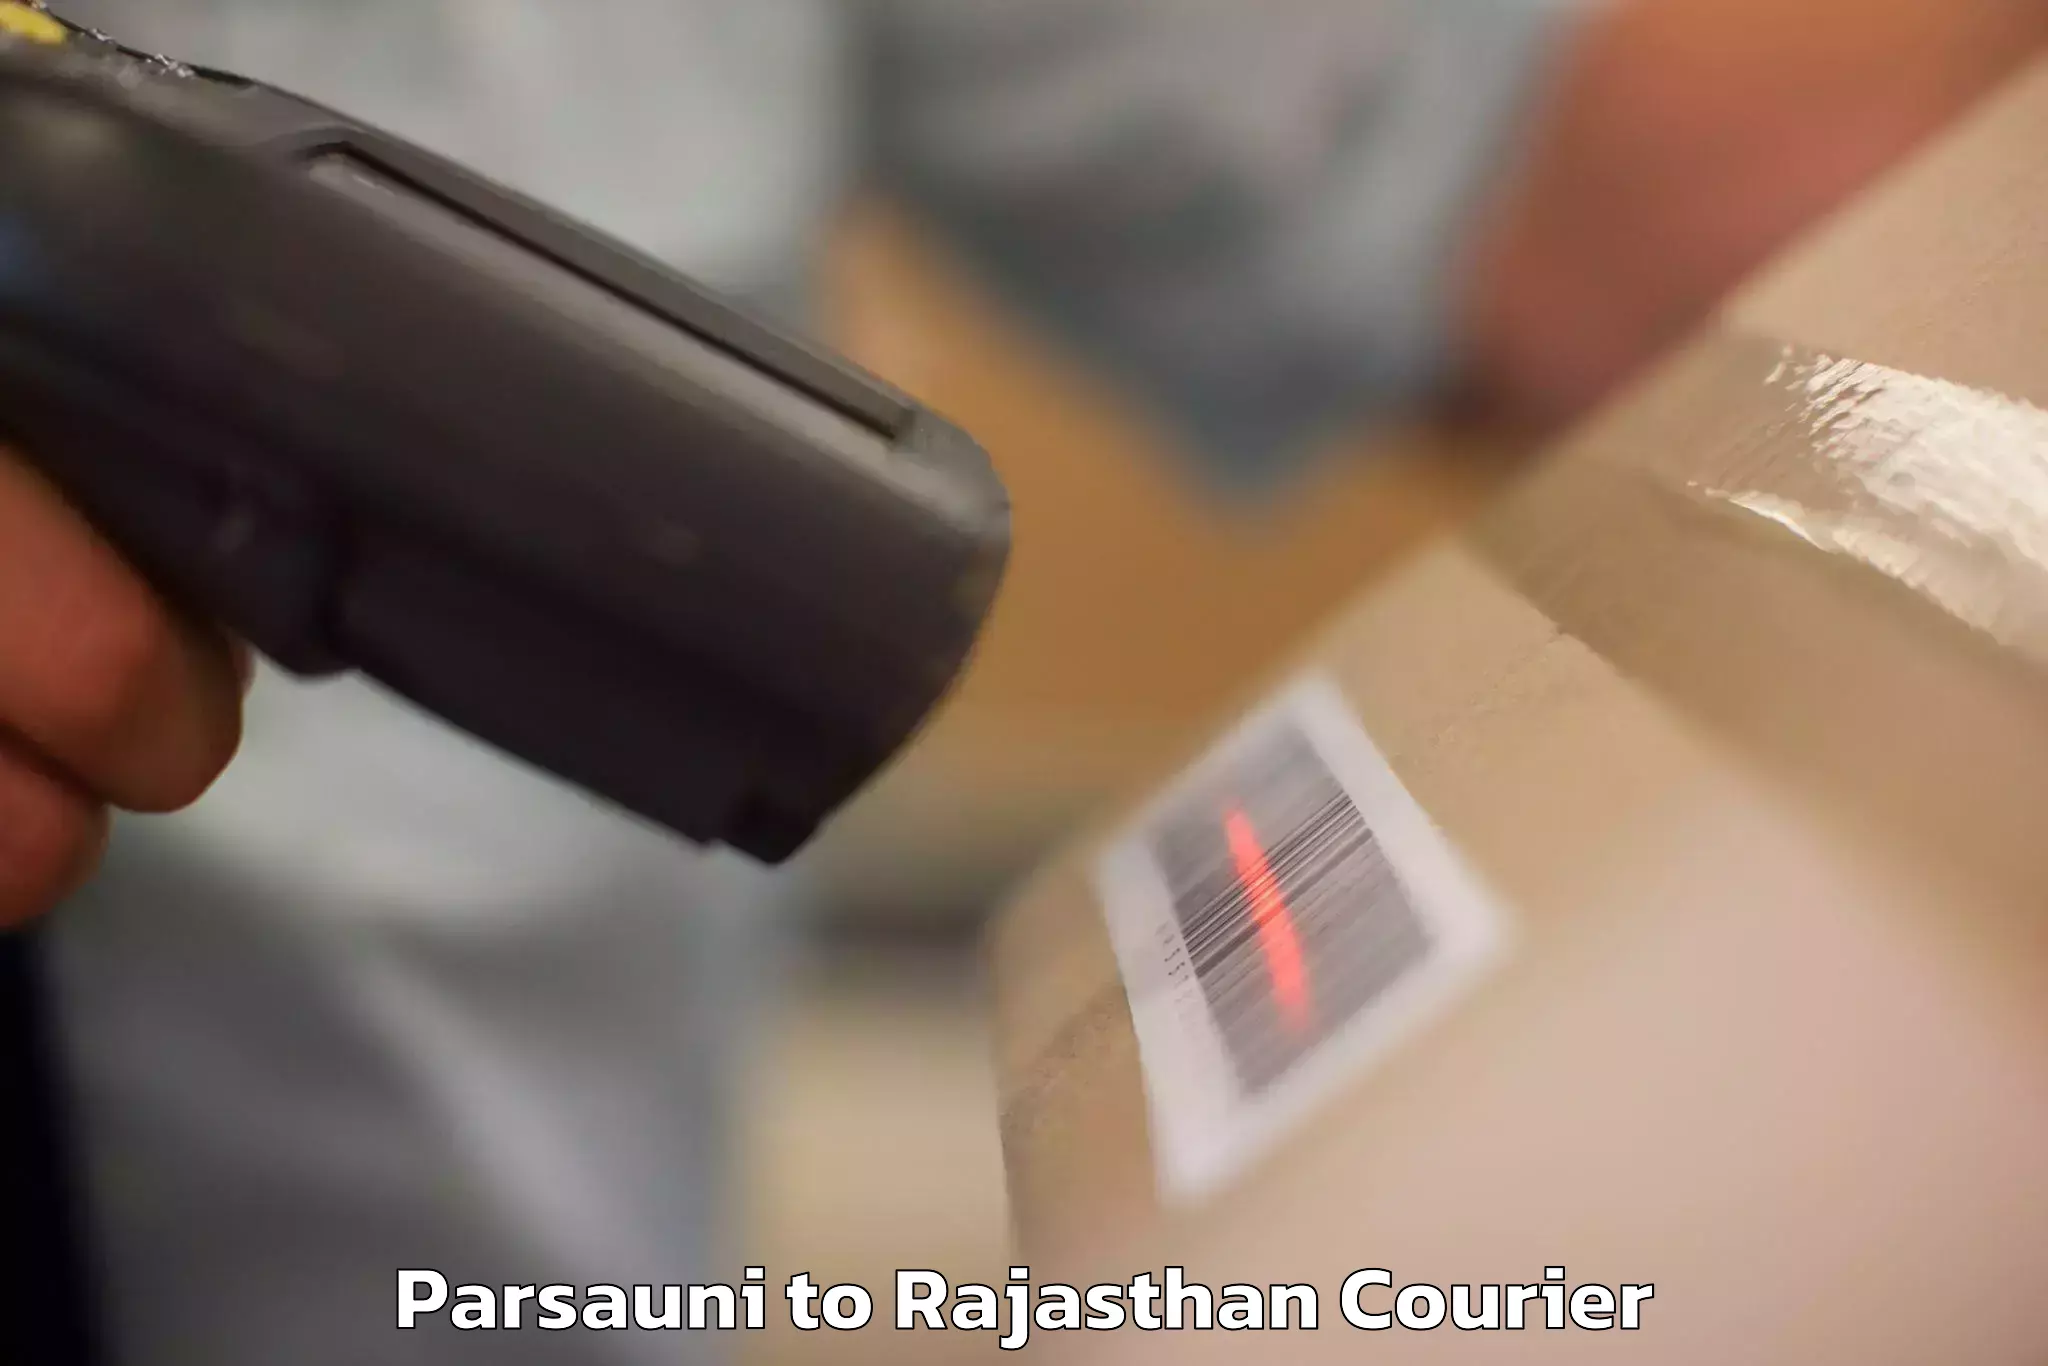 Baggage shipping service Parsauni to Rajasthan